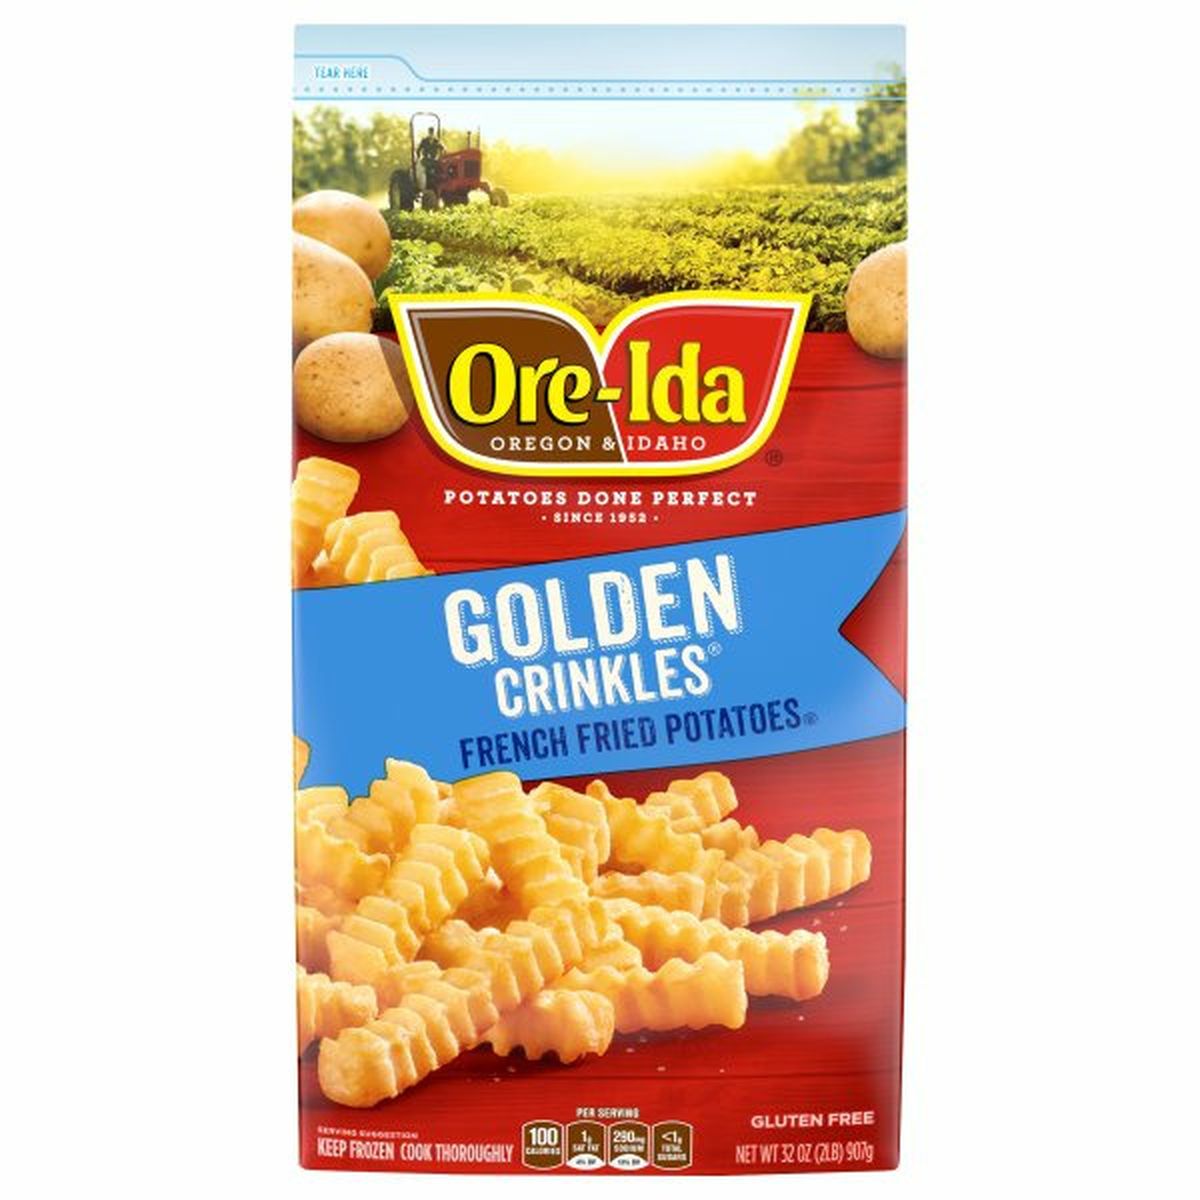 Calories in Ore-Ida Crinkles, Golden